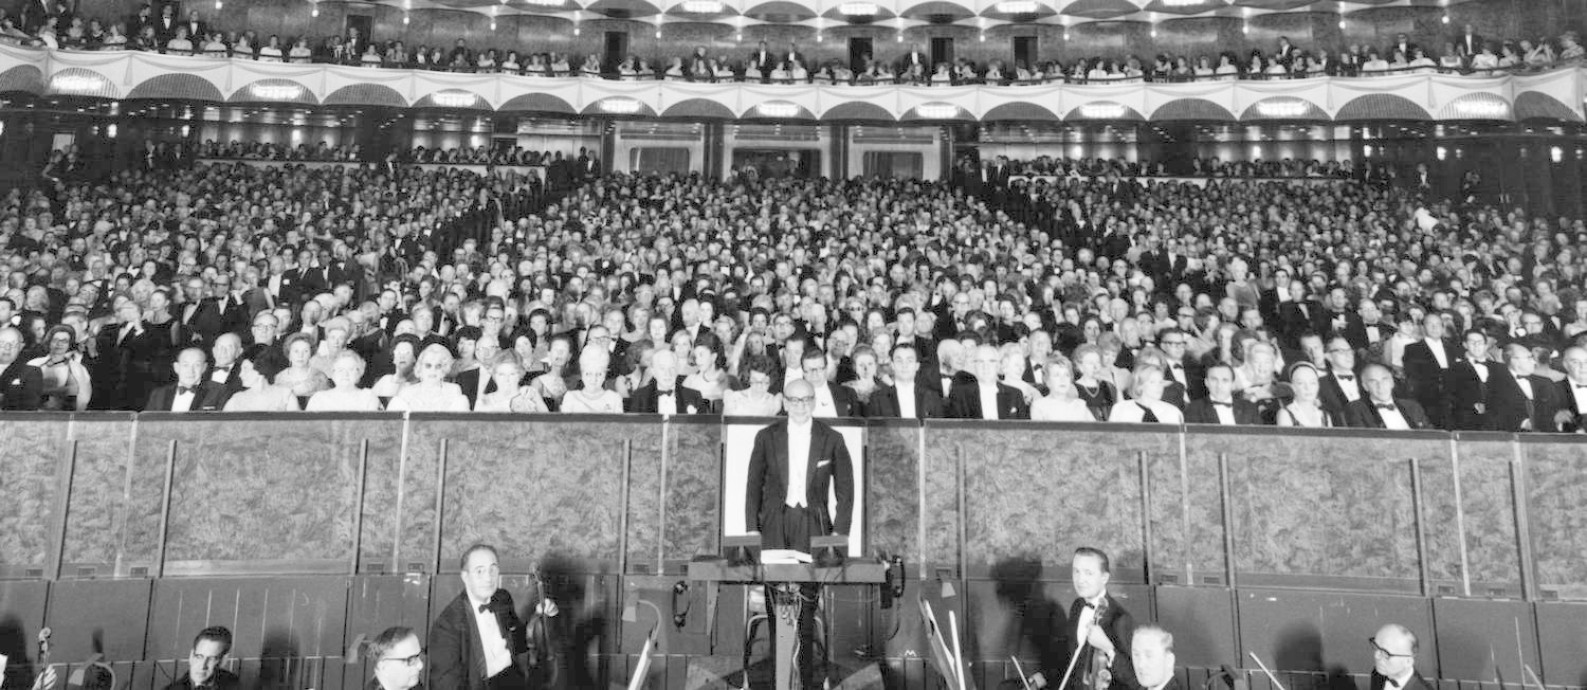 Metropolitan Opera House, em Nova York, em uma noite de 1955, período em que ainda atraía grandes públicos Foto: Authenticated News / Agência O Globo